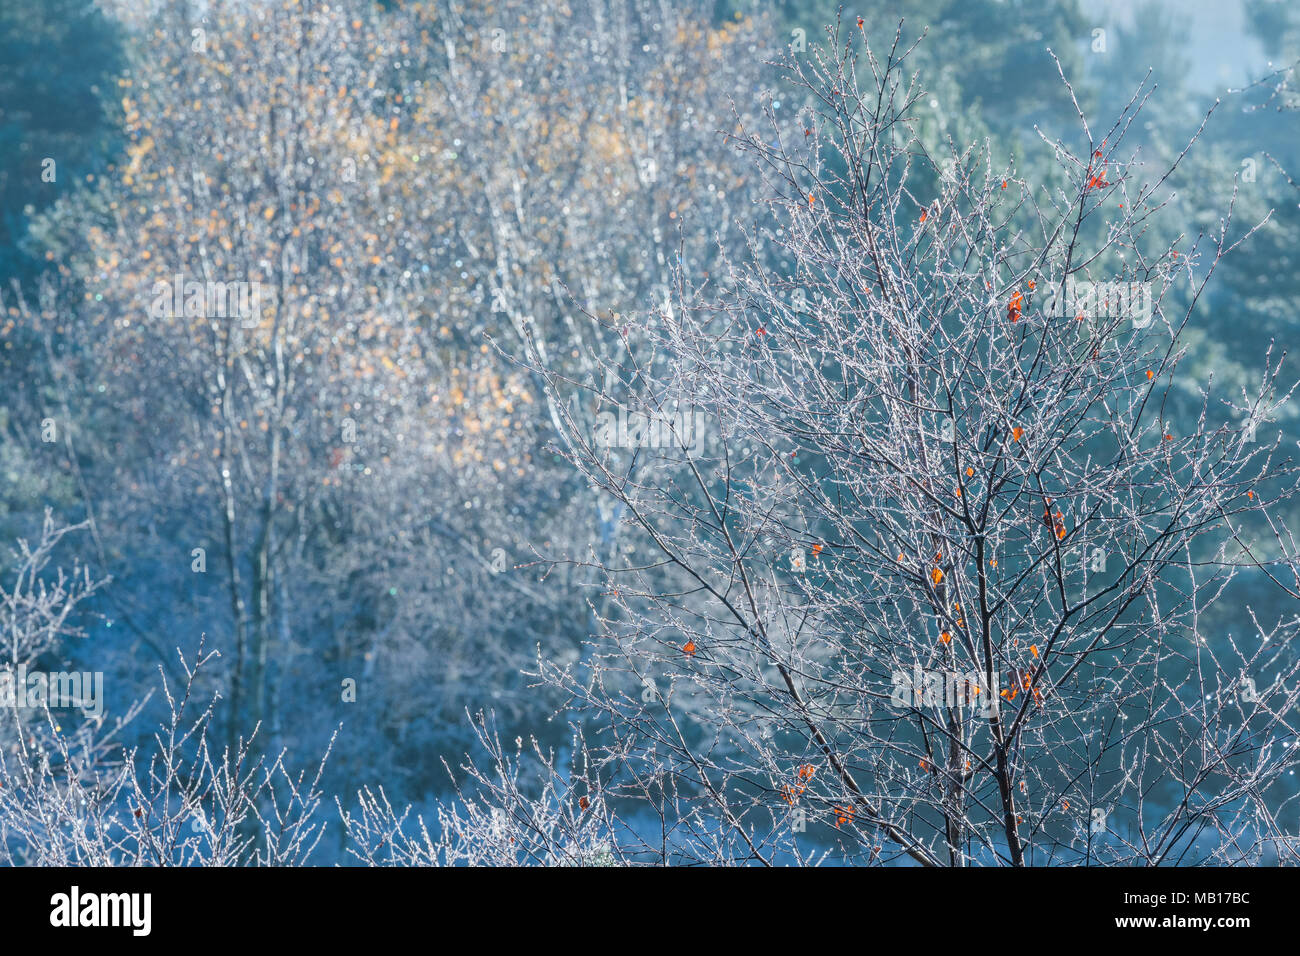 Bulbi per alberi con poche foglie rimanenti coperto di brina trasformata per forte gradiente in un freddo inverno mattina come i primi raggi del sole scioglie il ghiaccio. Foto Stock